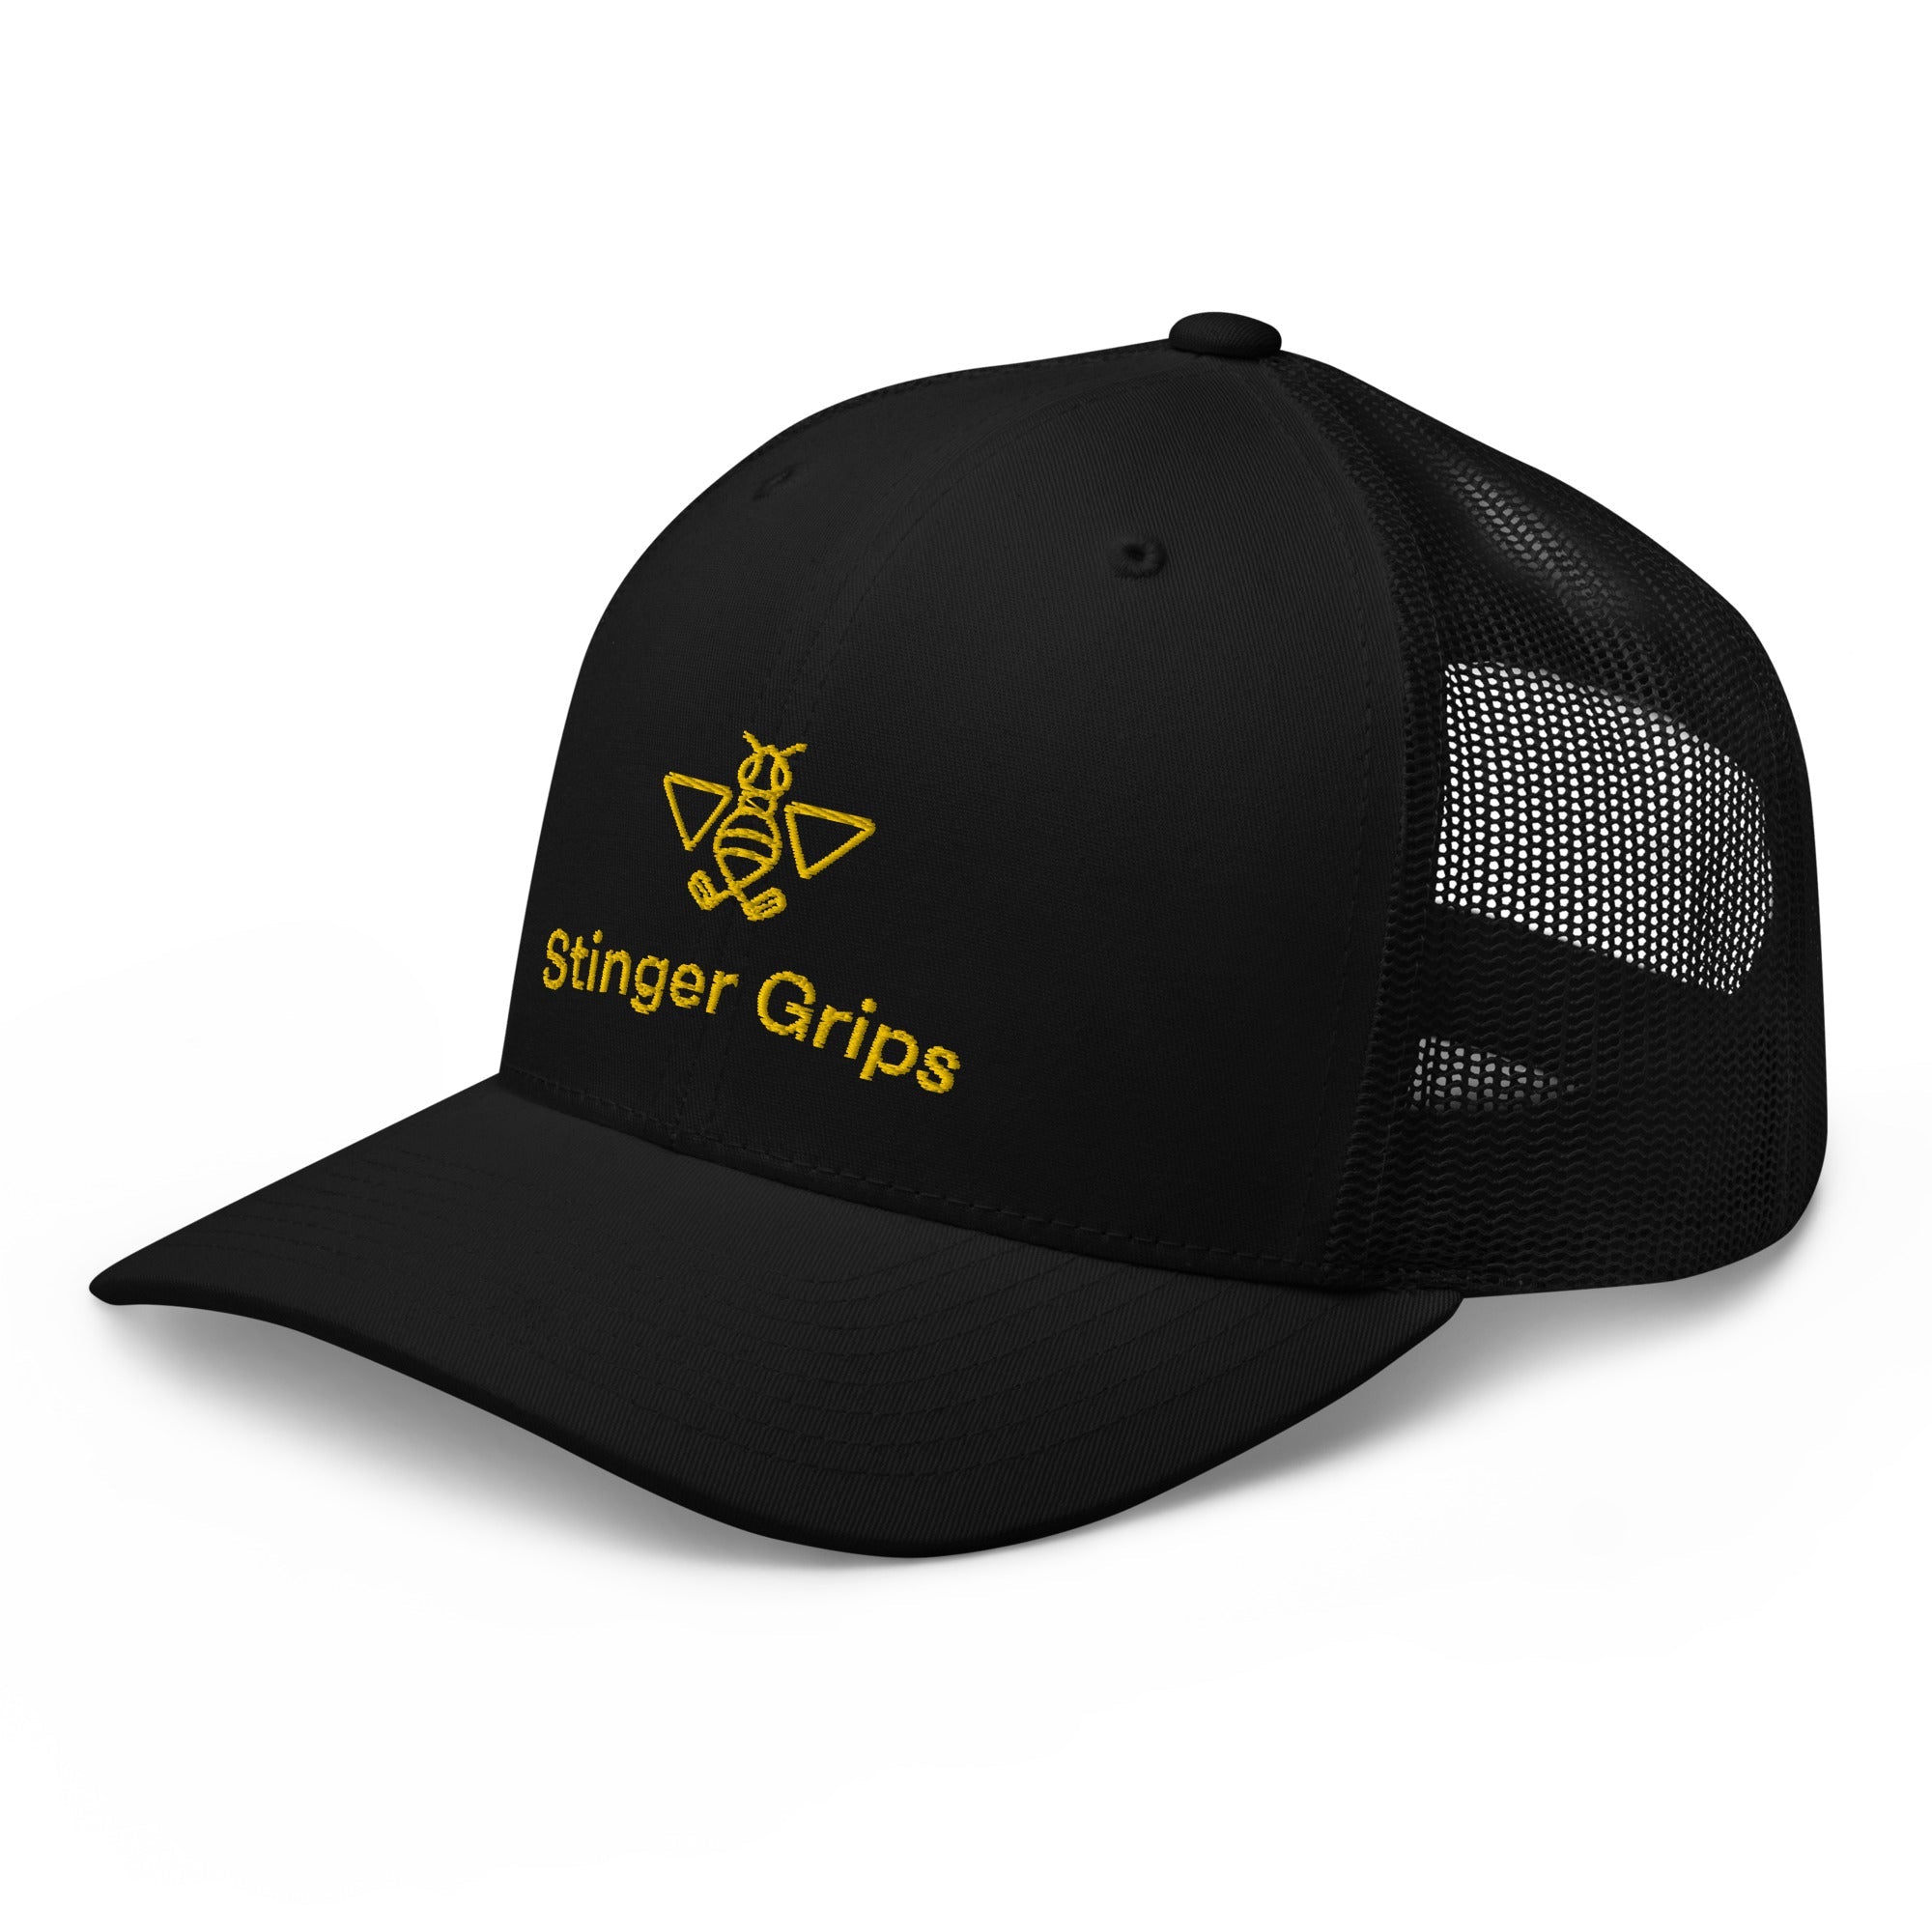 Trucker Golf Hat - Stinger Grips